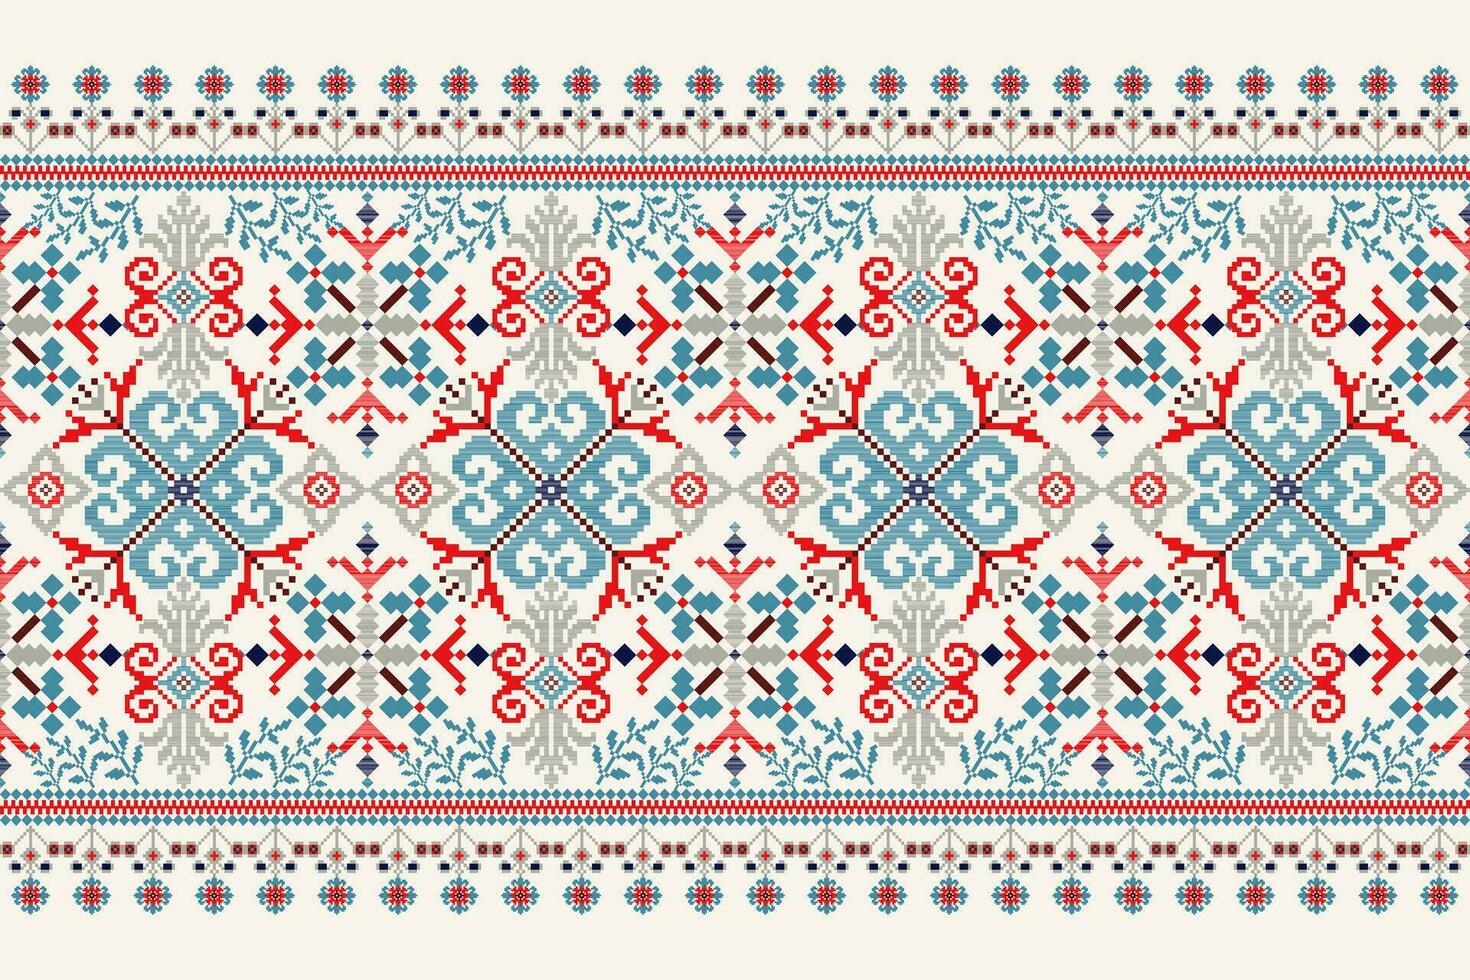 floral cruzar puntada bordado en blanco fondo.geometrico étnico oriental modelo tradicional.azteca estilo resumen vector ilustración.diseño para textura,tela,ropa,envoltura,decoración,bufanda.